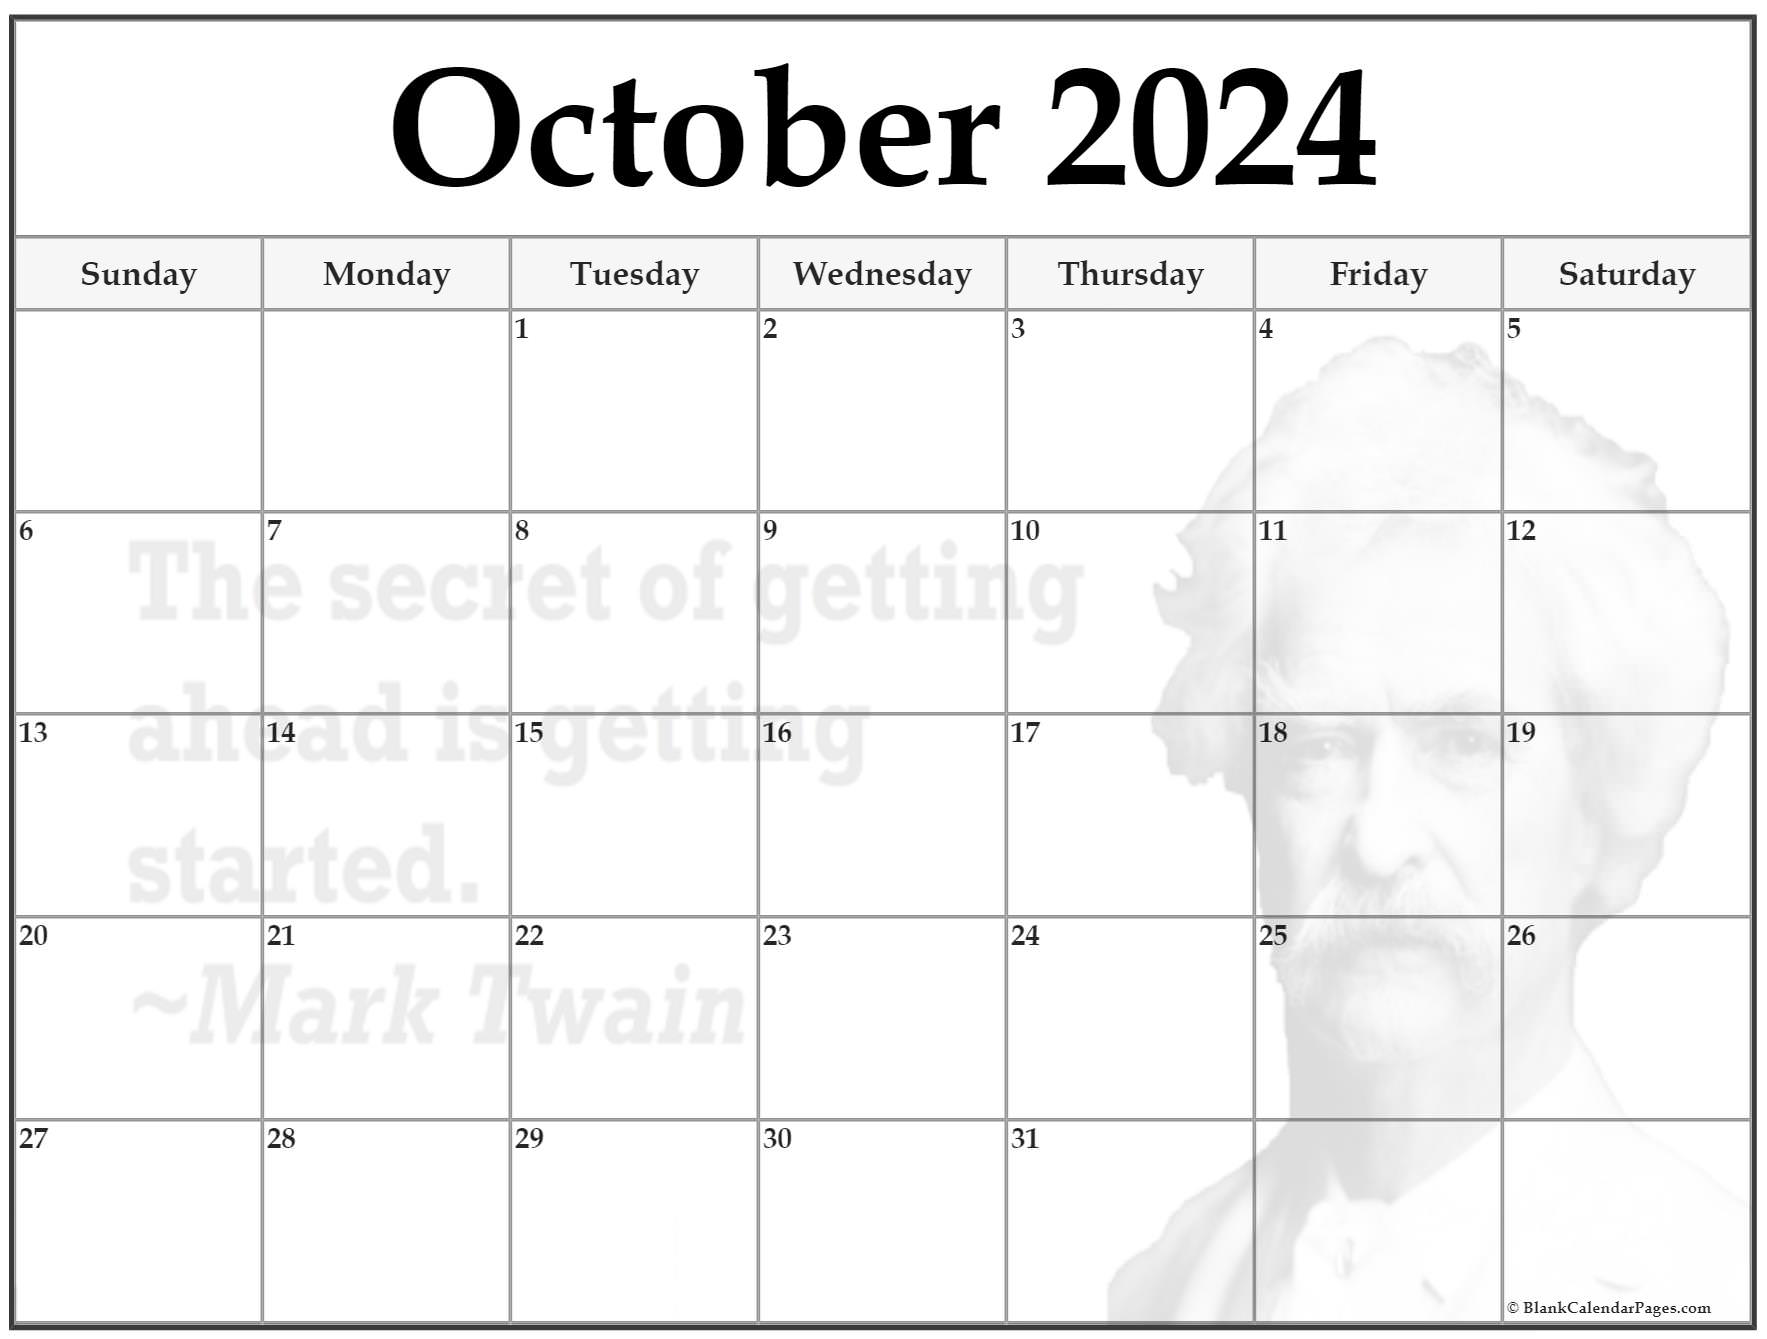 24+ October 2024 quote calendars